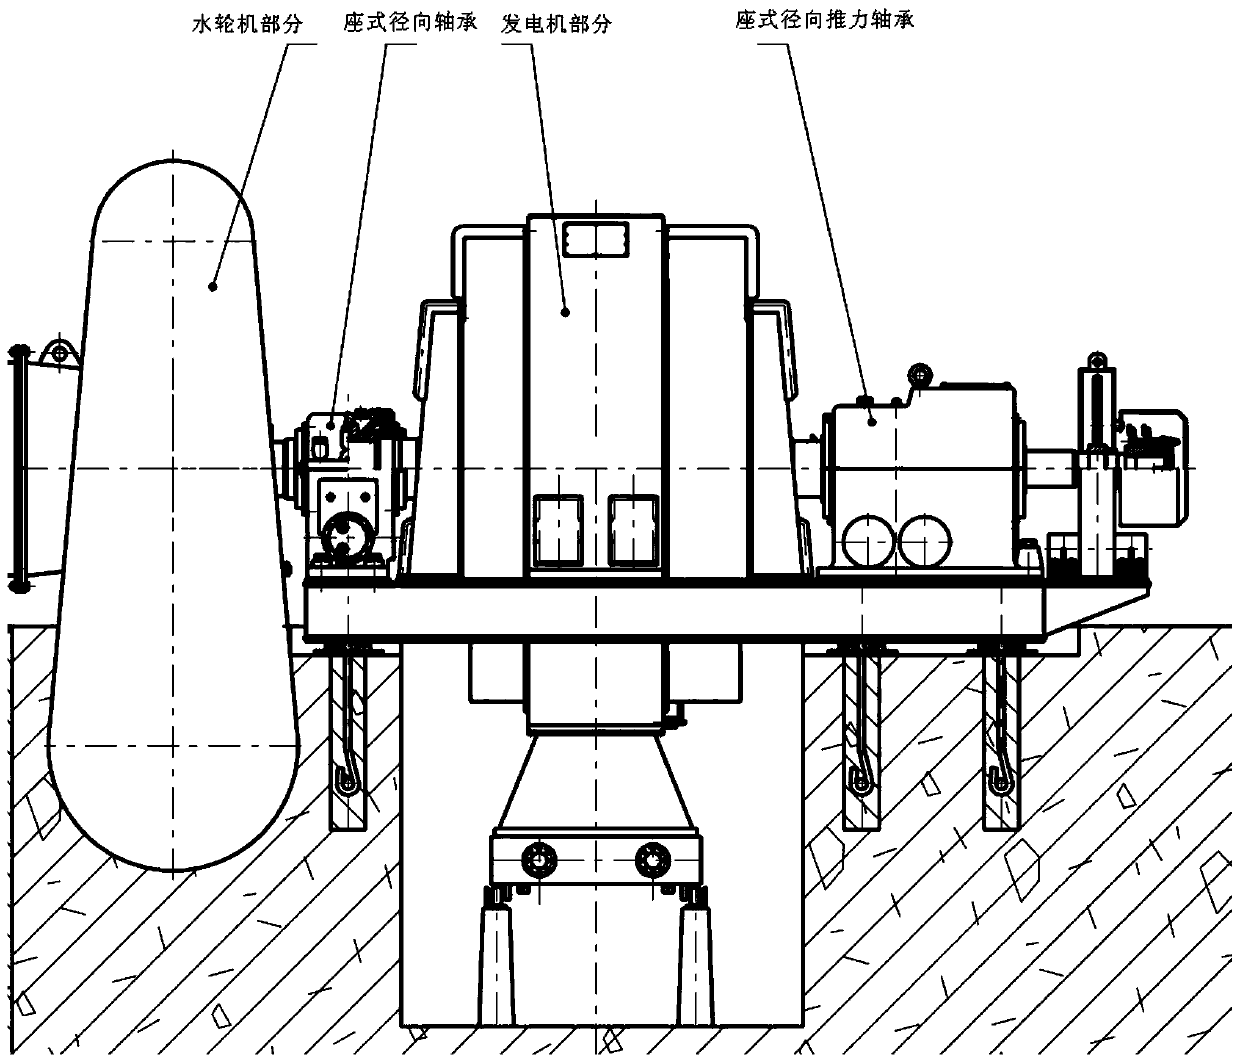 Pedestal type radial thrust bearing device